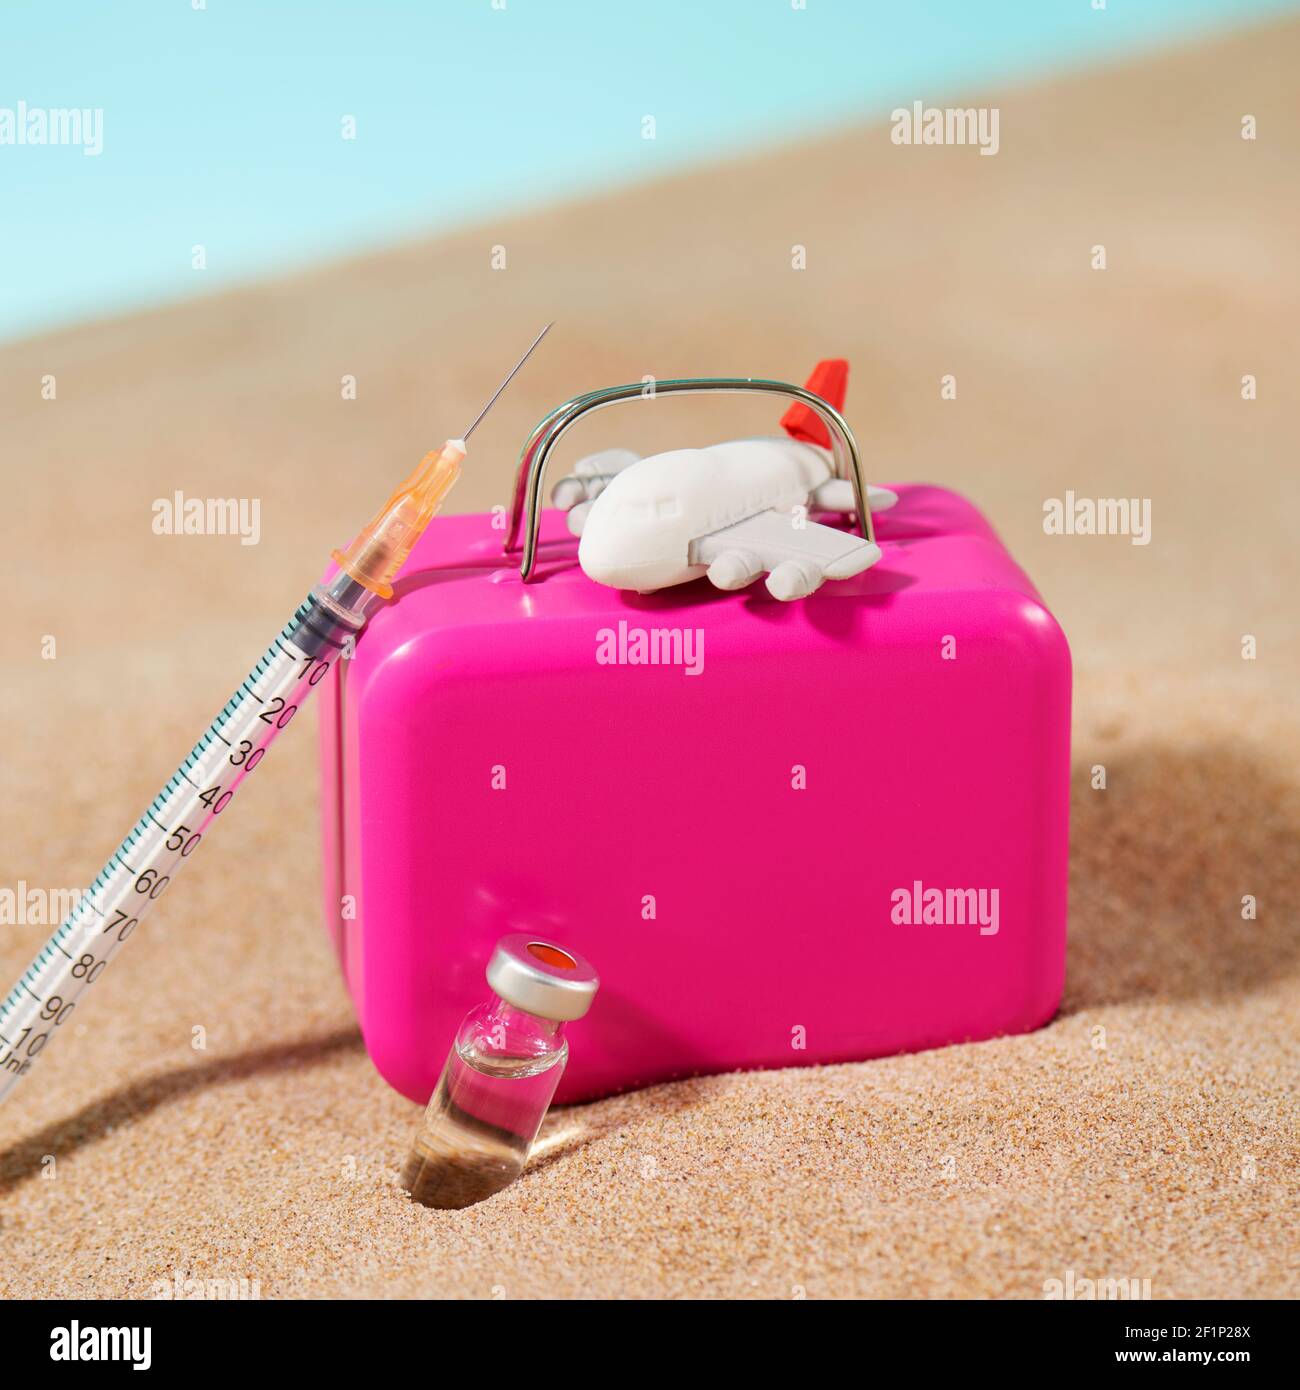 un flaconcino, una siringa, una valigia rosa e un aereo sulla sabbia, su sfondo blu, raffigurante il settore del turismo medico Foto Stock